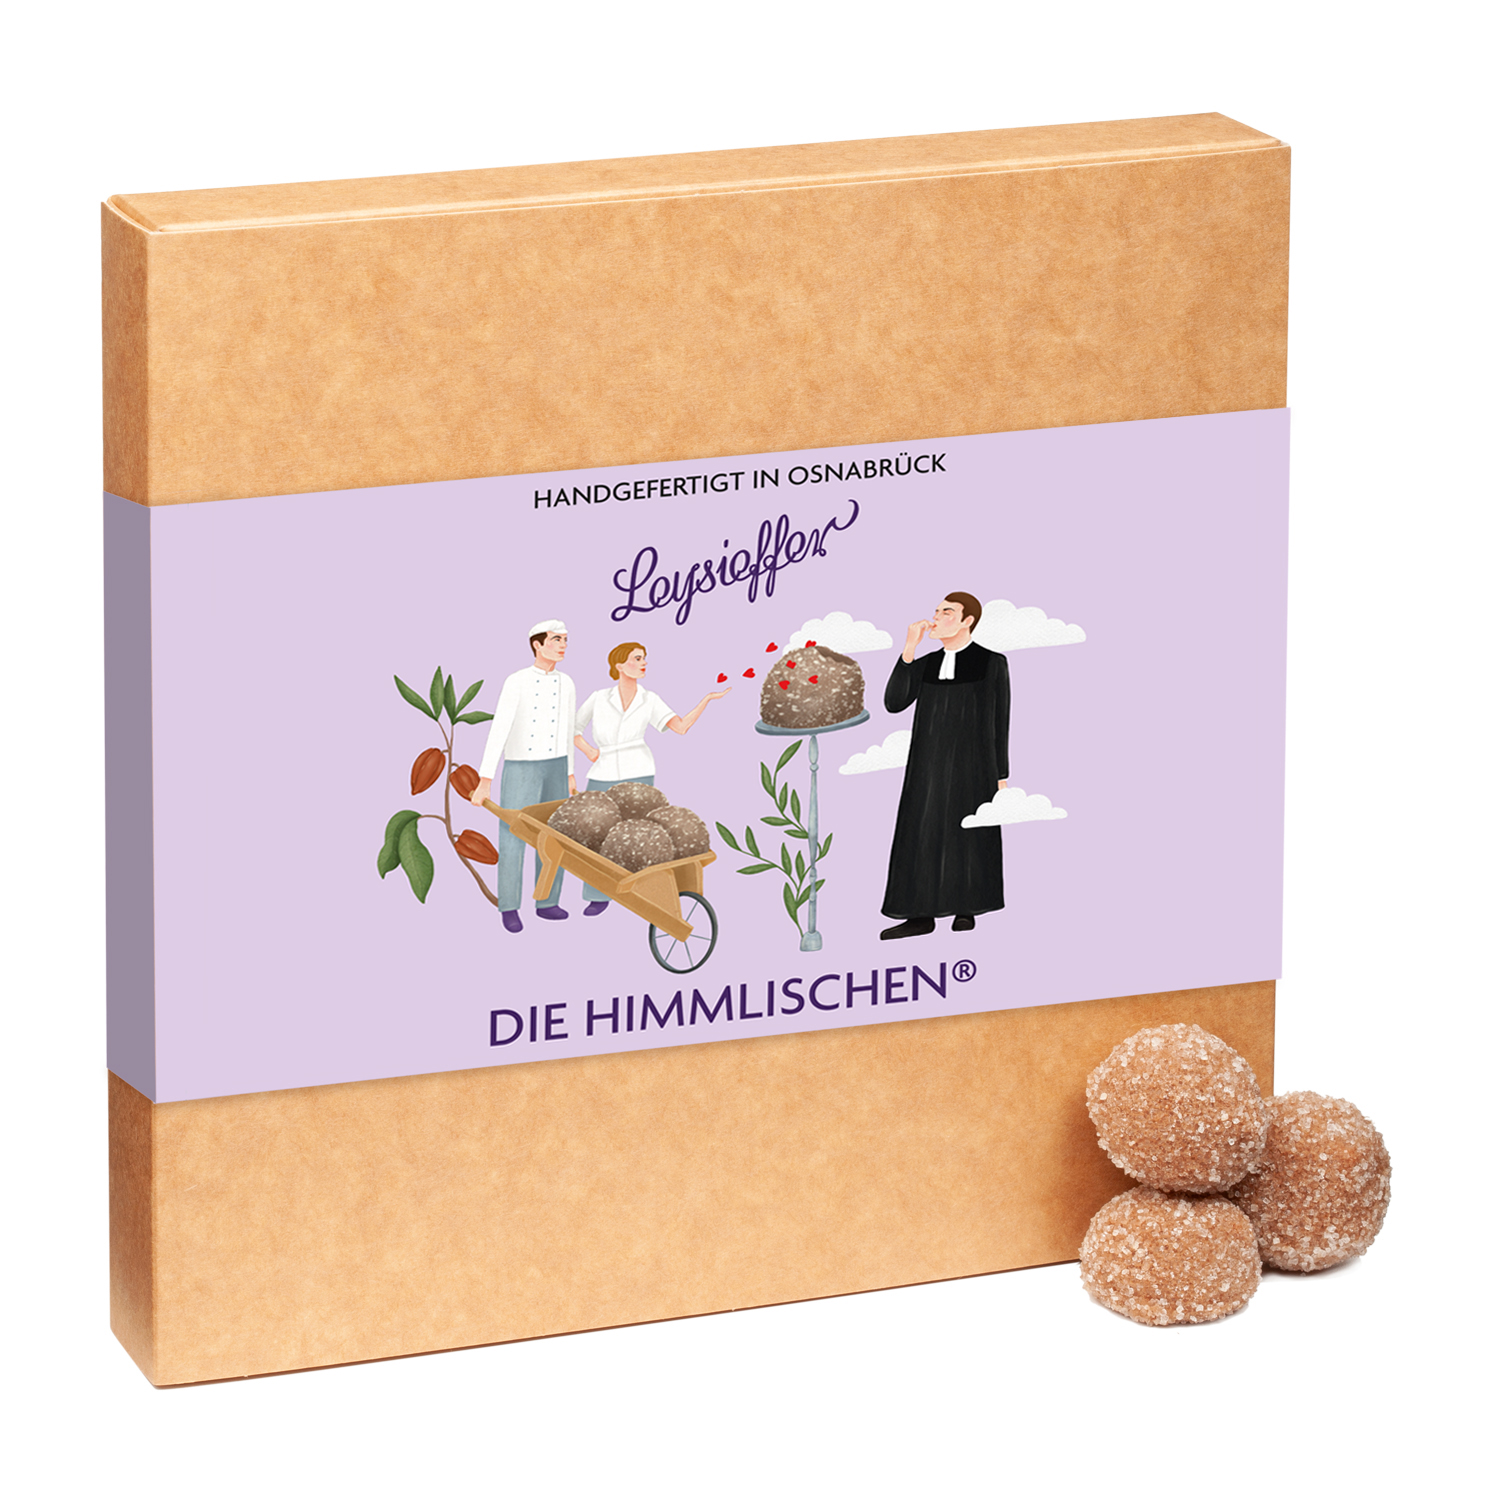 Himmlische in Milk Chocolate in a Gift Box